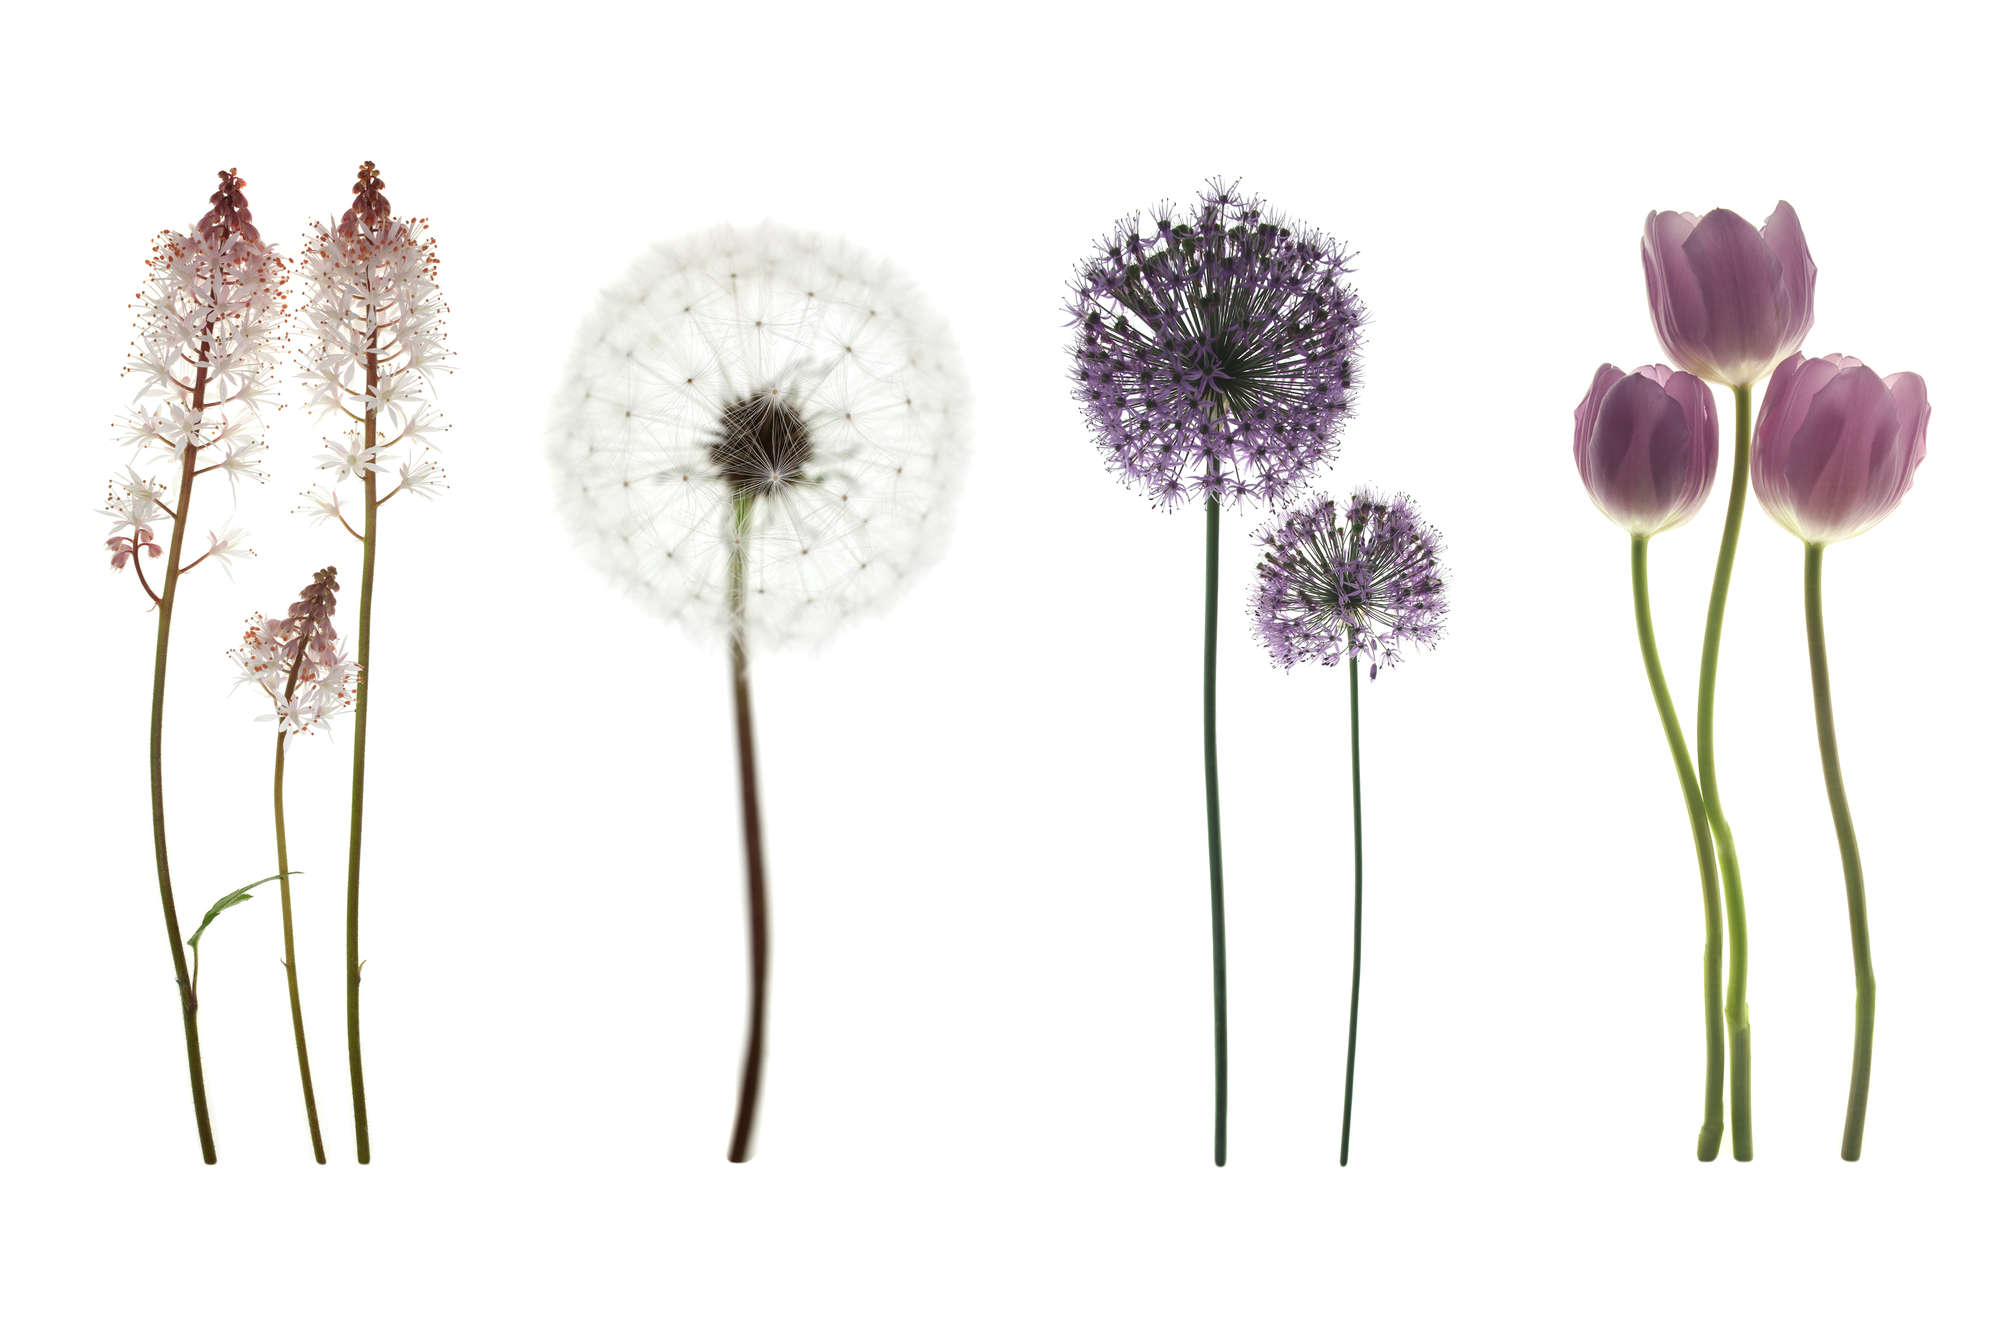             papiers peints à impression numérique avec diversité de fleurs - intissé lisse mat
        